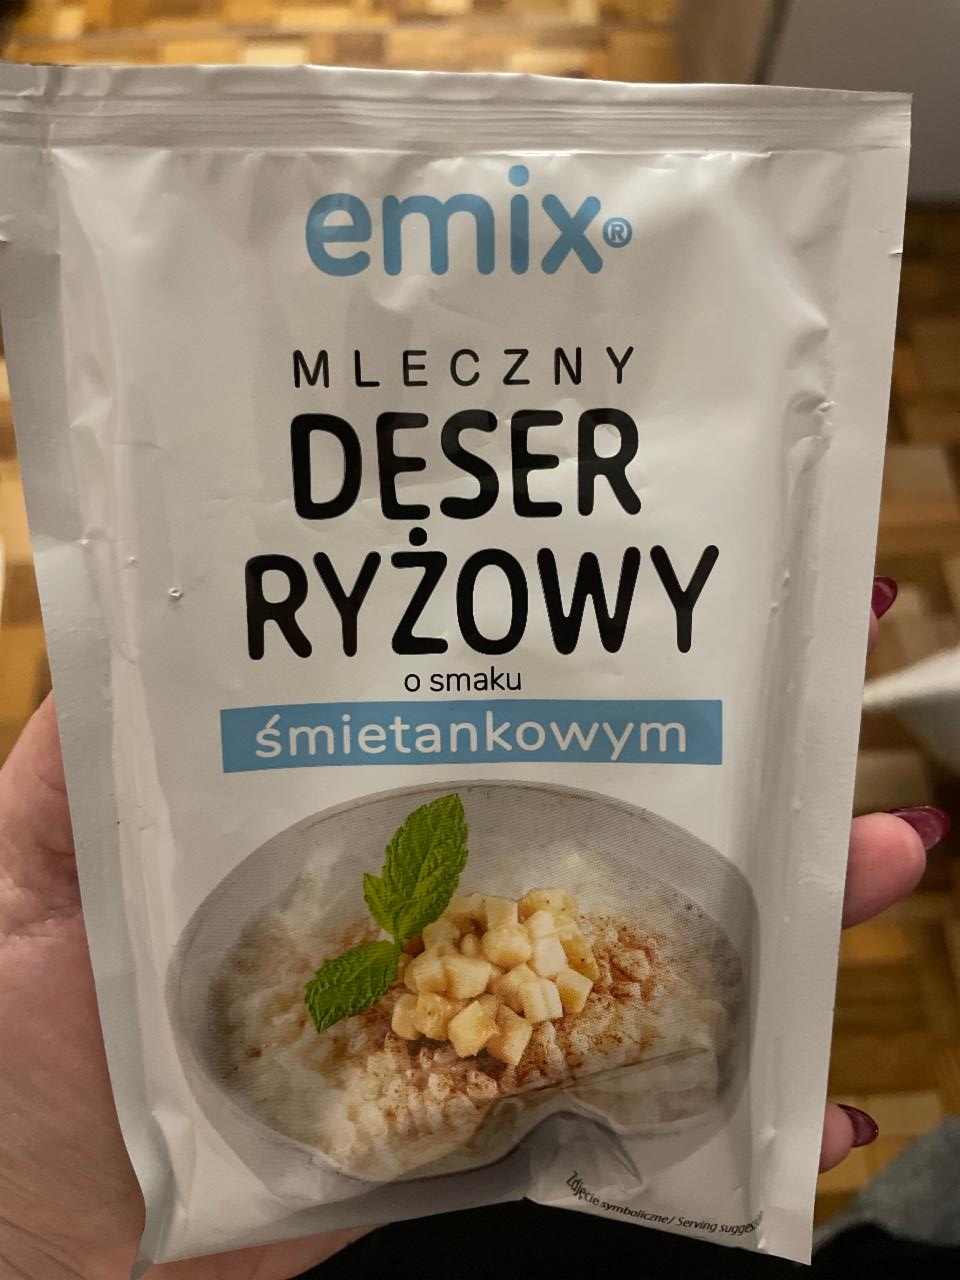 Zdjęcia - Mleczny Deser ryżowy o smaku śmietankowym Emix